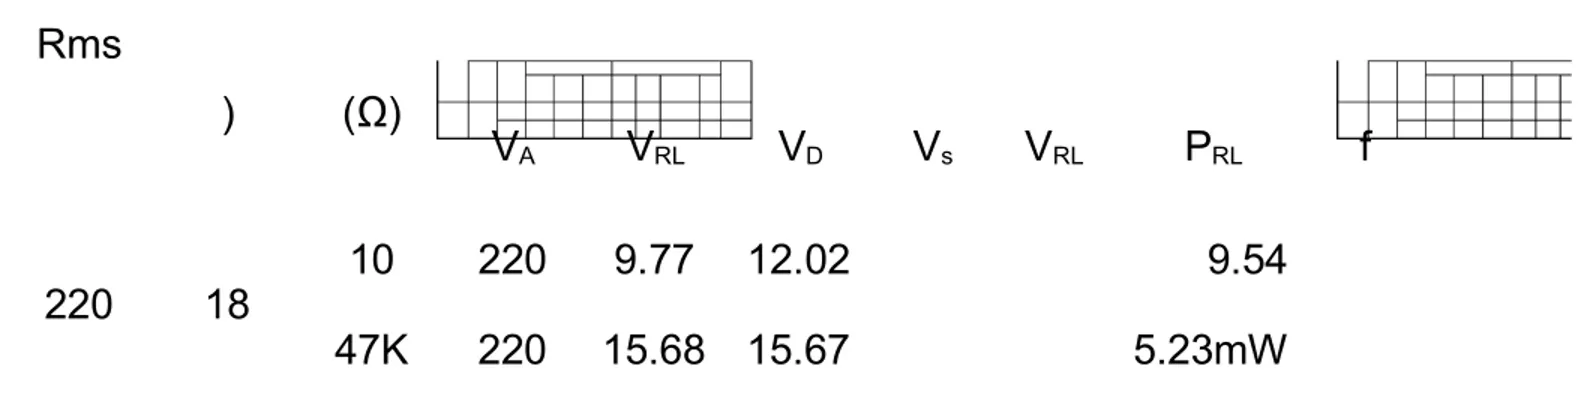 Table 1.13 pengukuran diode penyearah gelombang penuh dengan 4 diode Vp Vs(V) R L (Ω) Pengukuran PerhitunganRms Ket (V) V A V RL V D V s V RL P RL f  220 18 10 220 9 4.64 47K 220 15.33 7.64